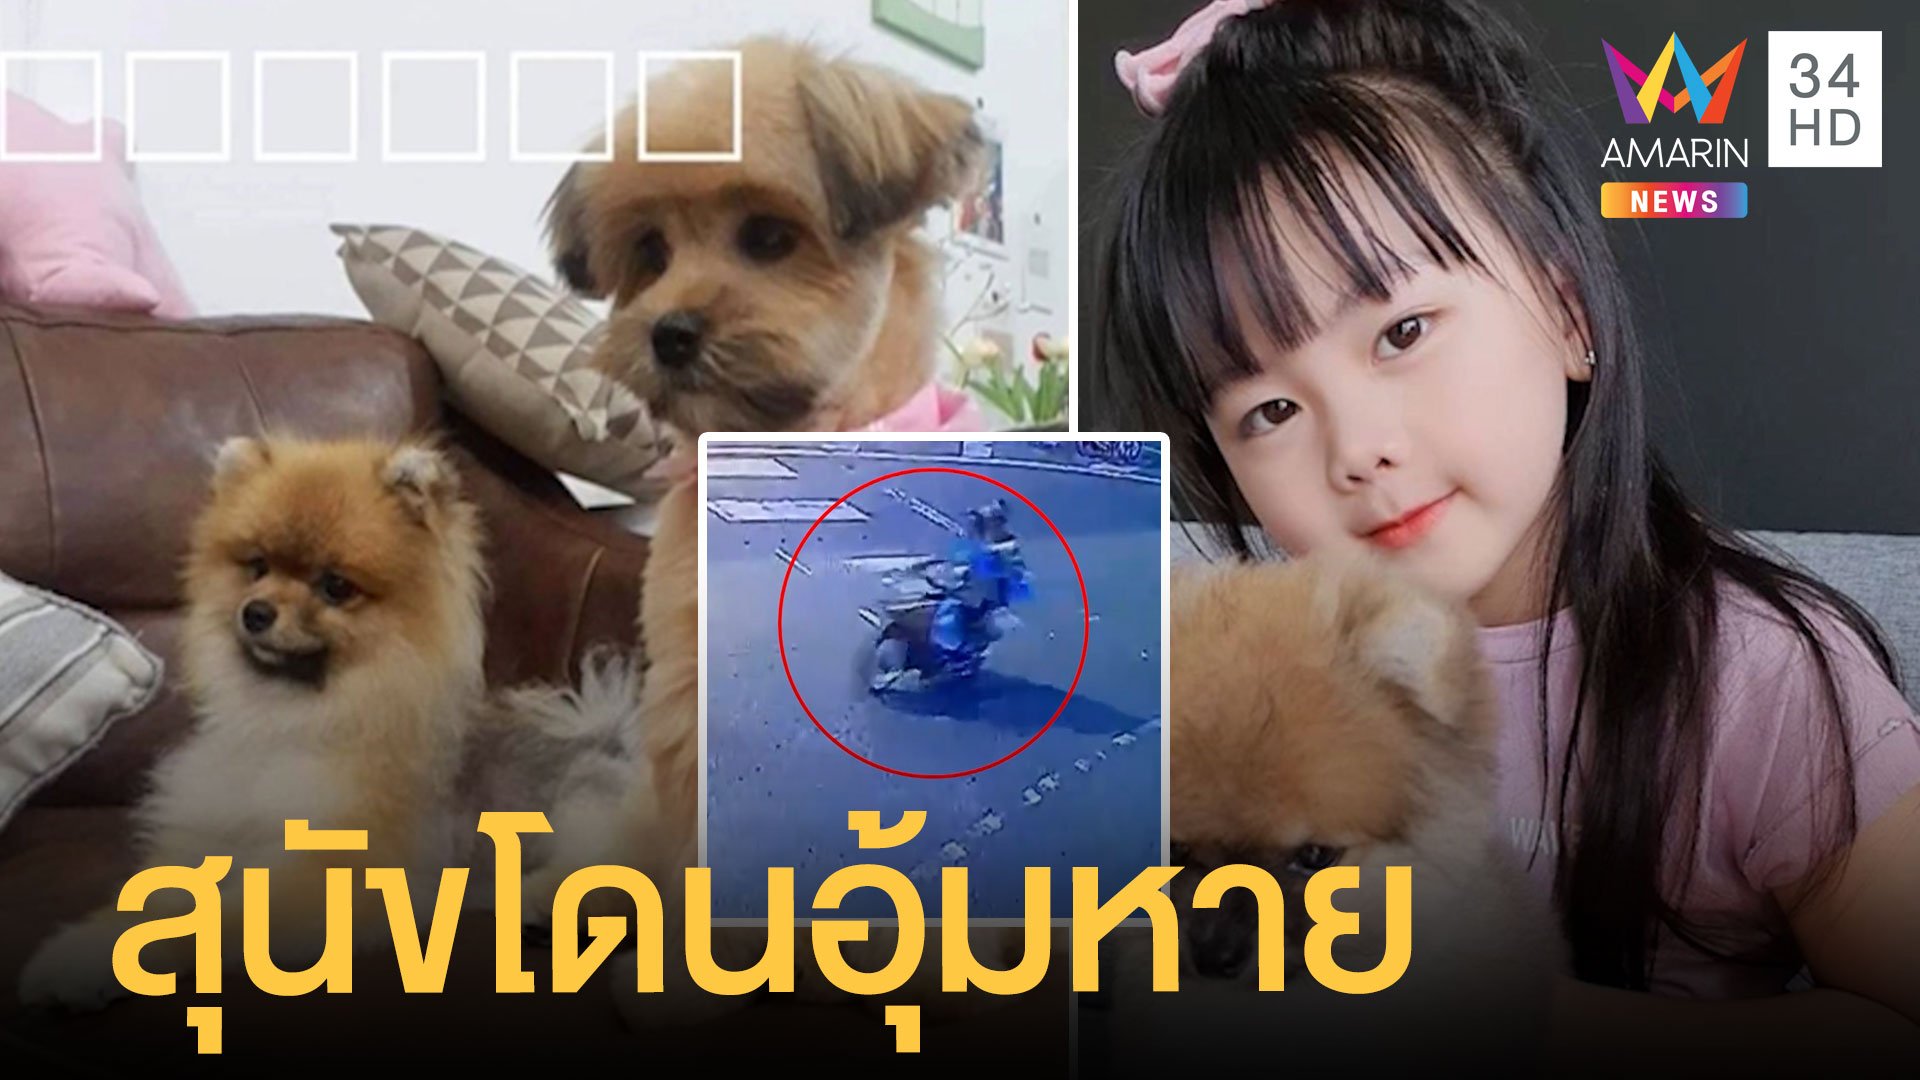 6 ขวบสุดเศร้า สุนัขแสนรักถูกอุ้มหาย 2 ตัว | ข่าวอรุณอมรินทร์ | 8 ต.ค. 64 | AMARIN TVHD34